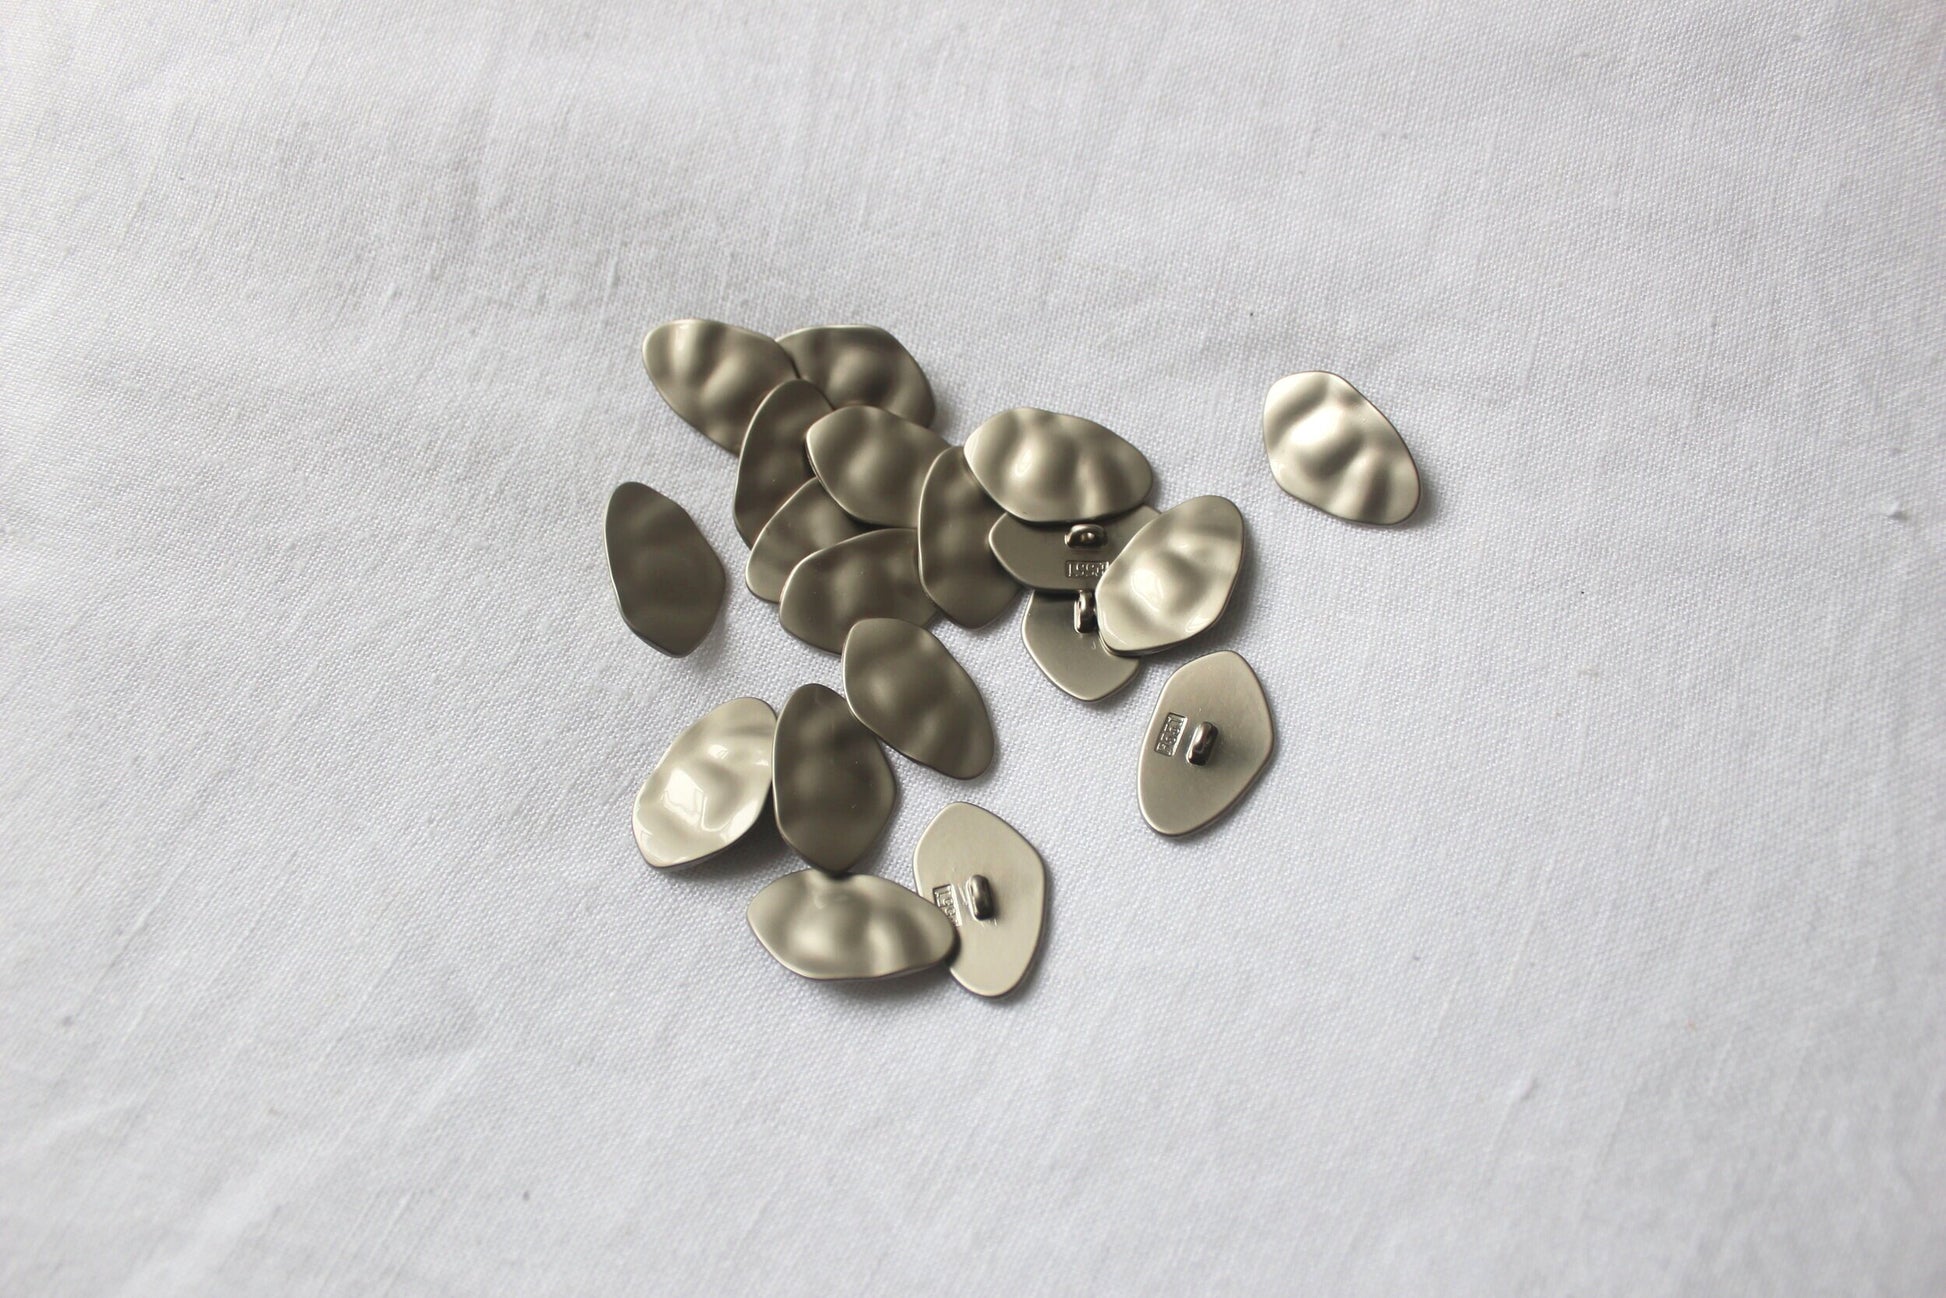 textured matte silver metal buttons 25mm x 15mm